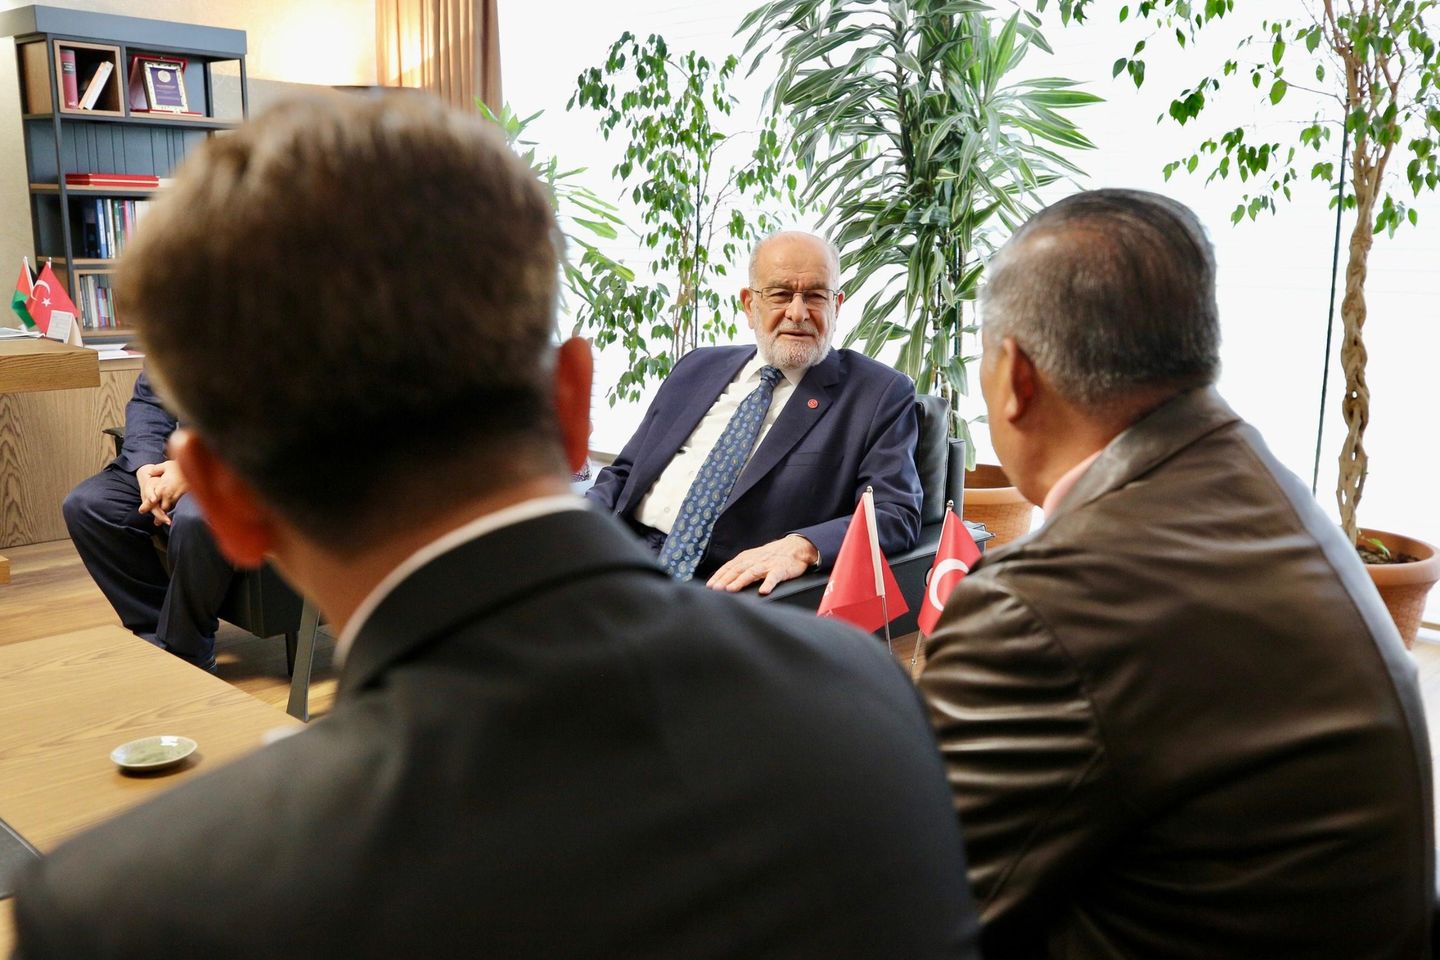  Saadet Partisi Genel Başkanı Temel Karamollaoğlu, Malezya Tarım Bakanı H.E Mohommad bin Sabu'yu Kabul Etti 